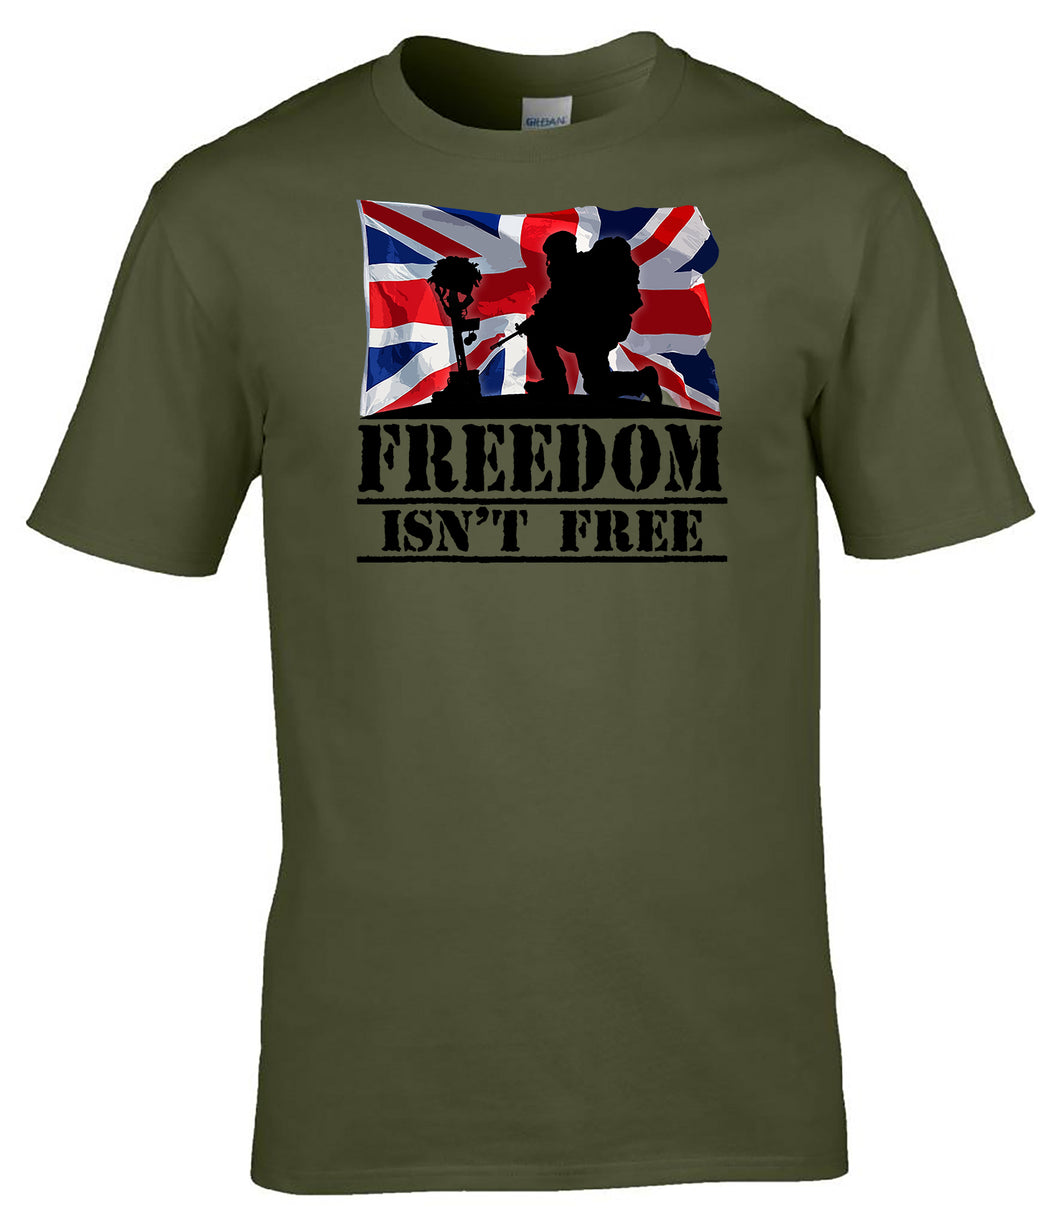 Freedom - It isn't FREE